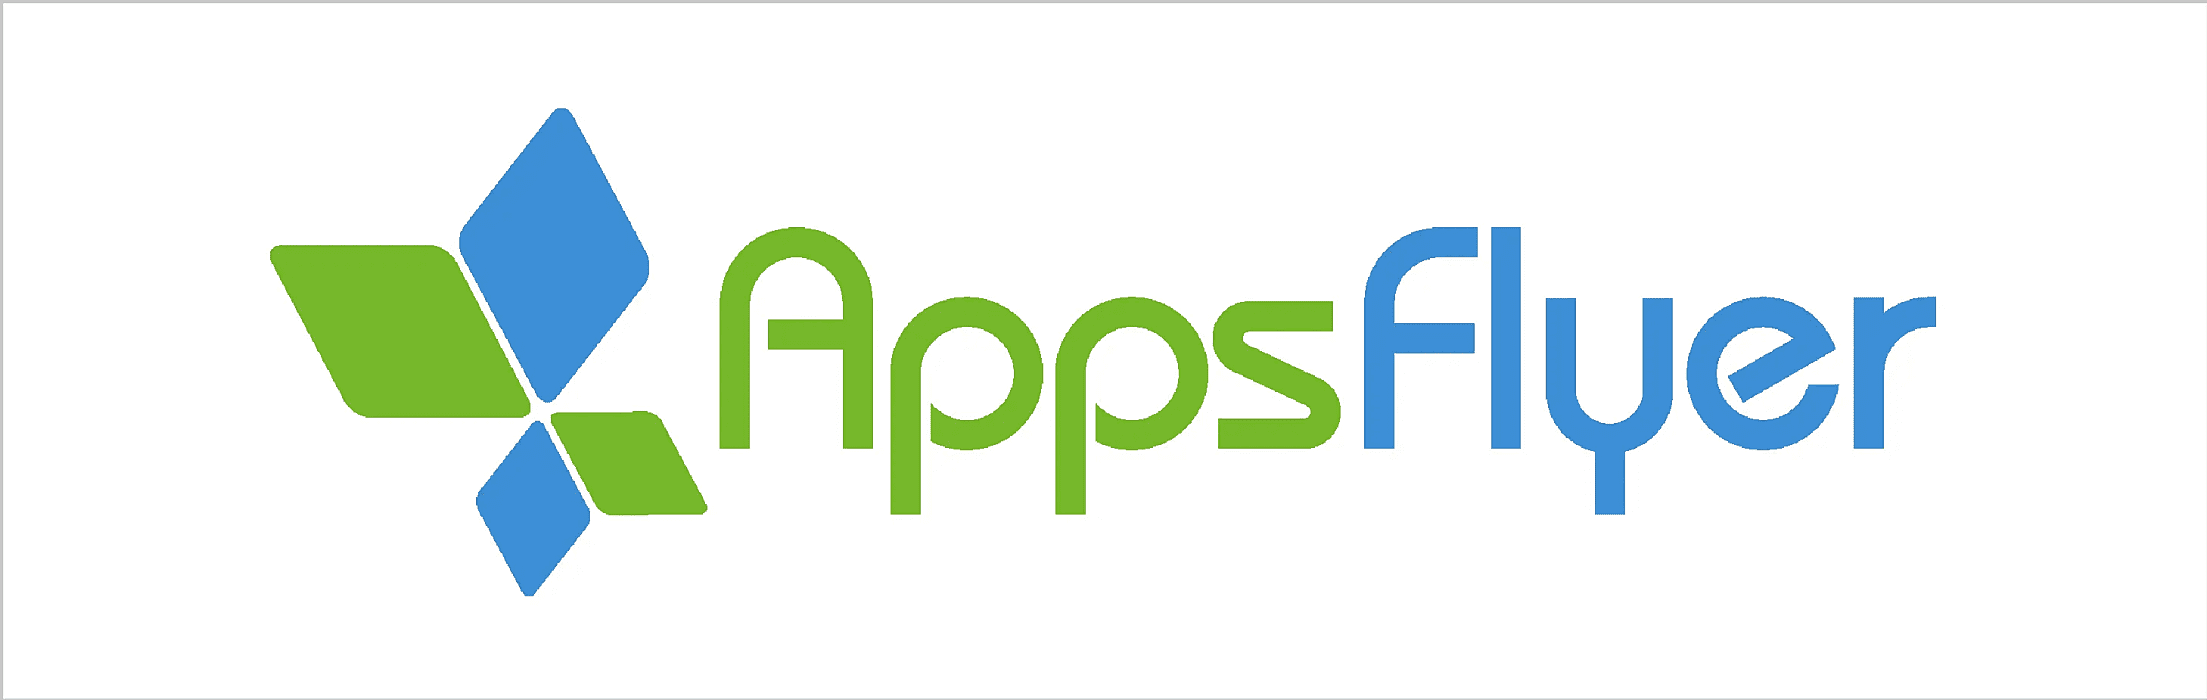 AppFlyer - mobile app analytics metrics